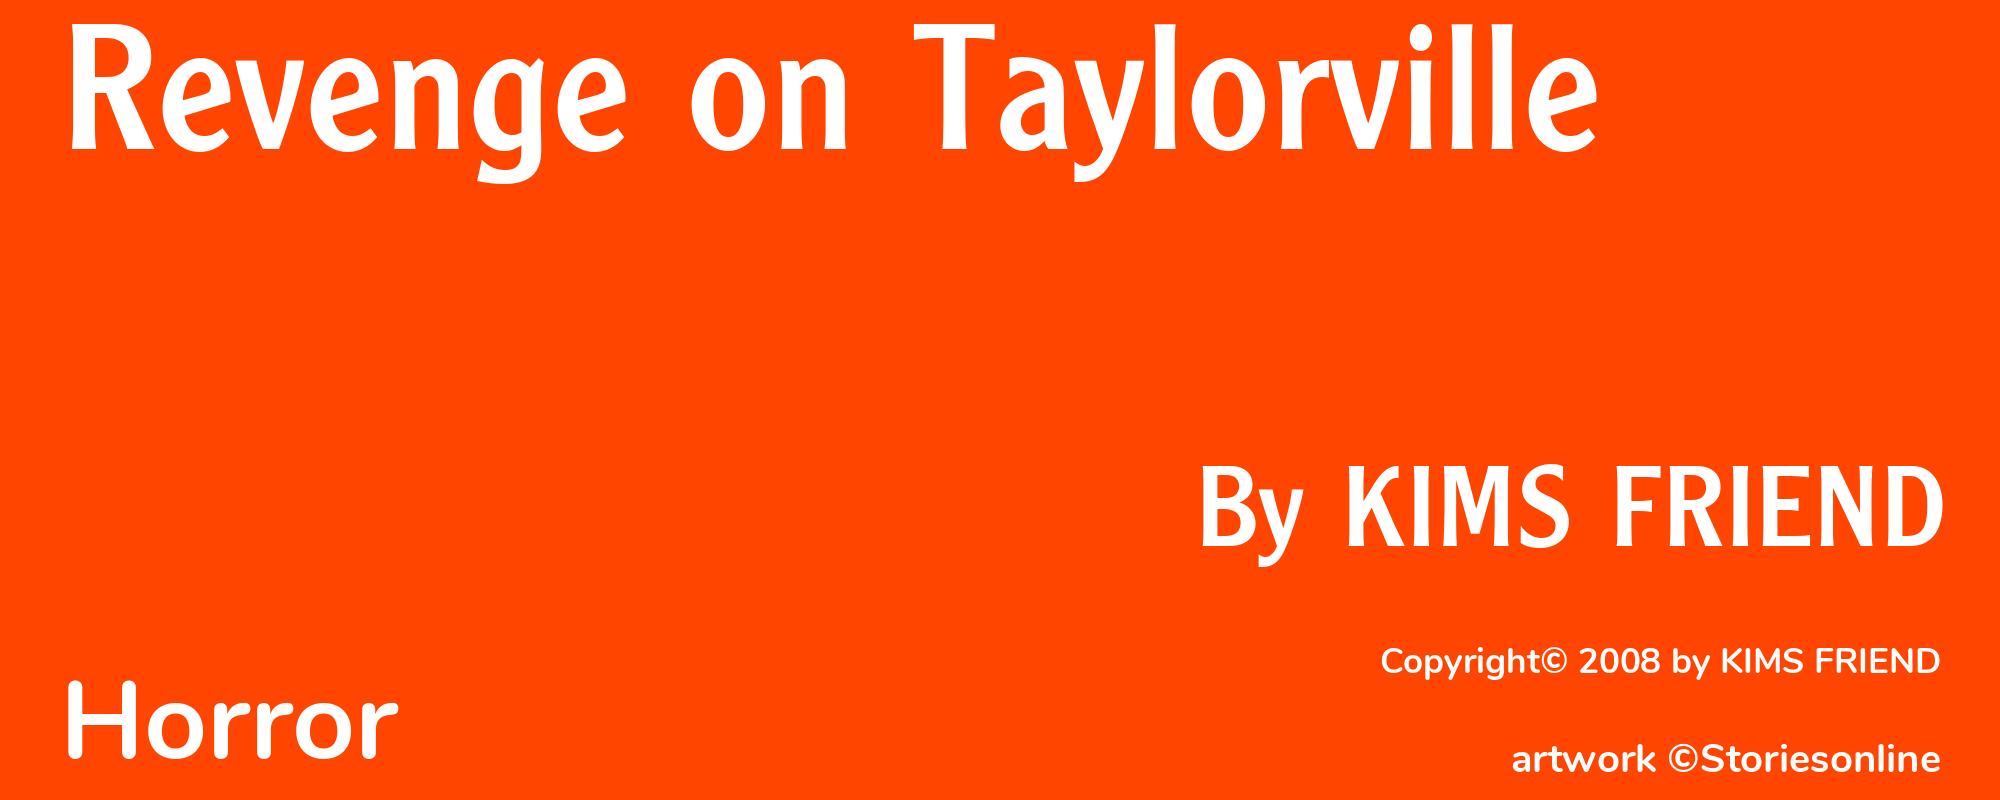 Revenge on Taylorville - Cover